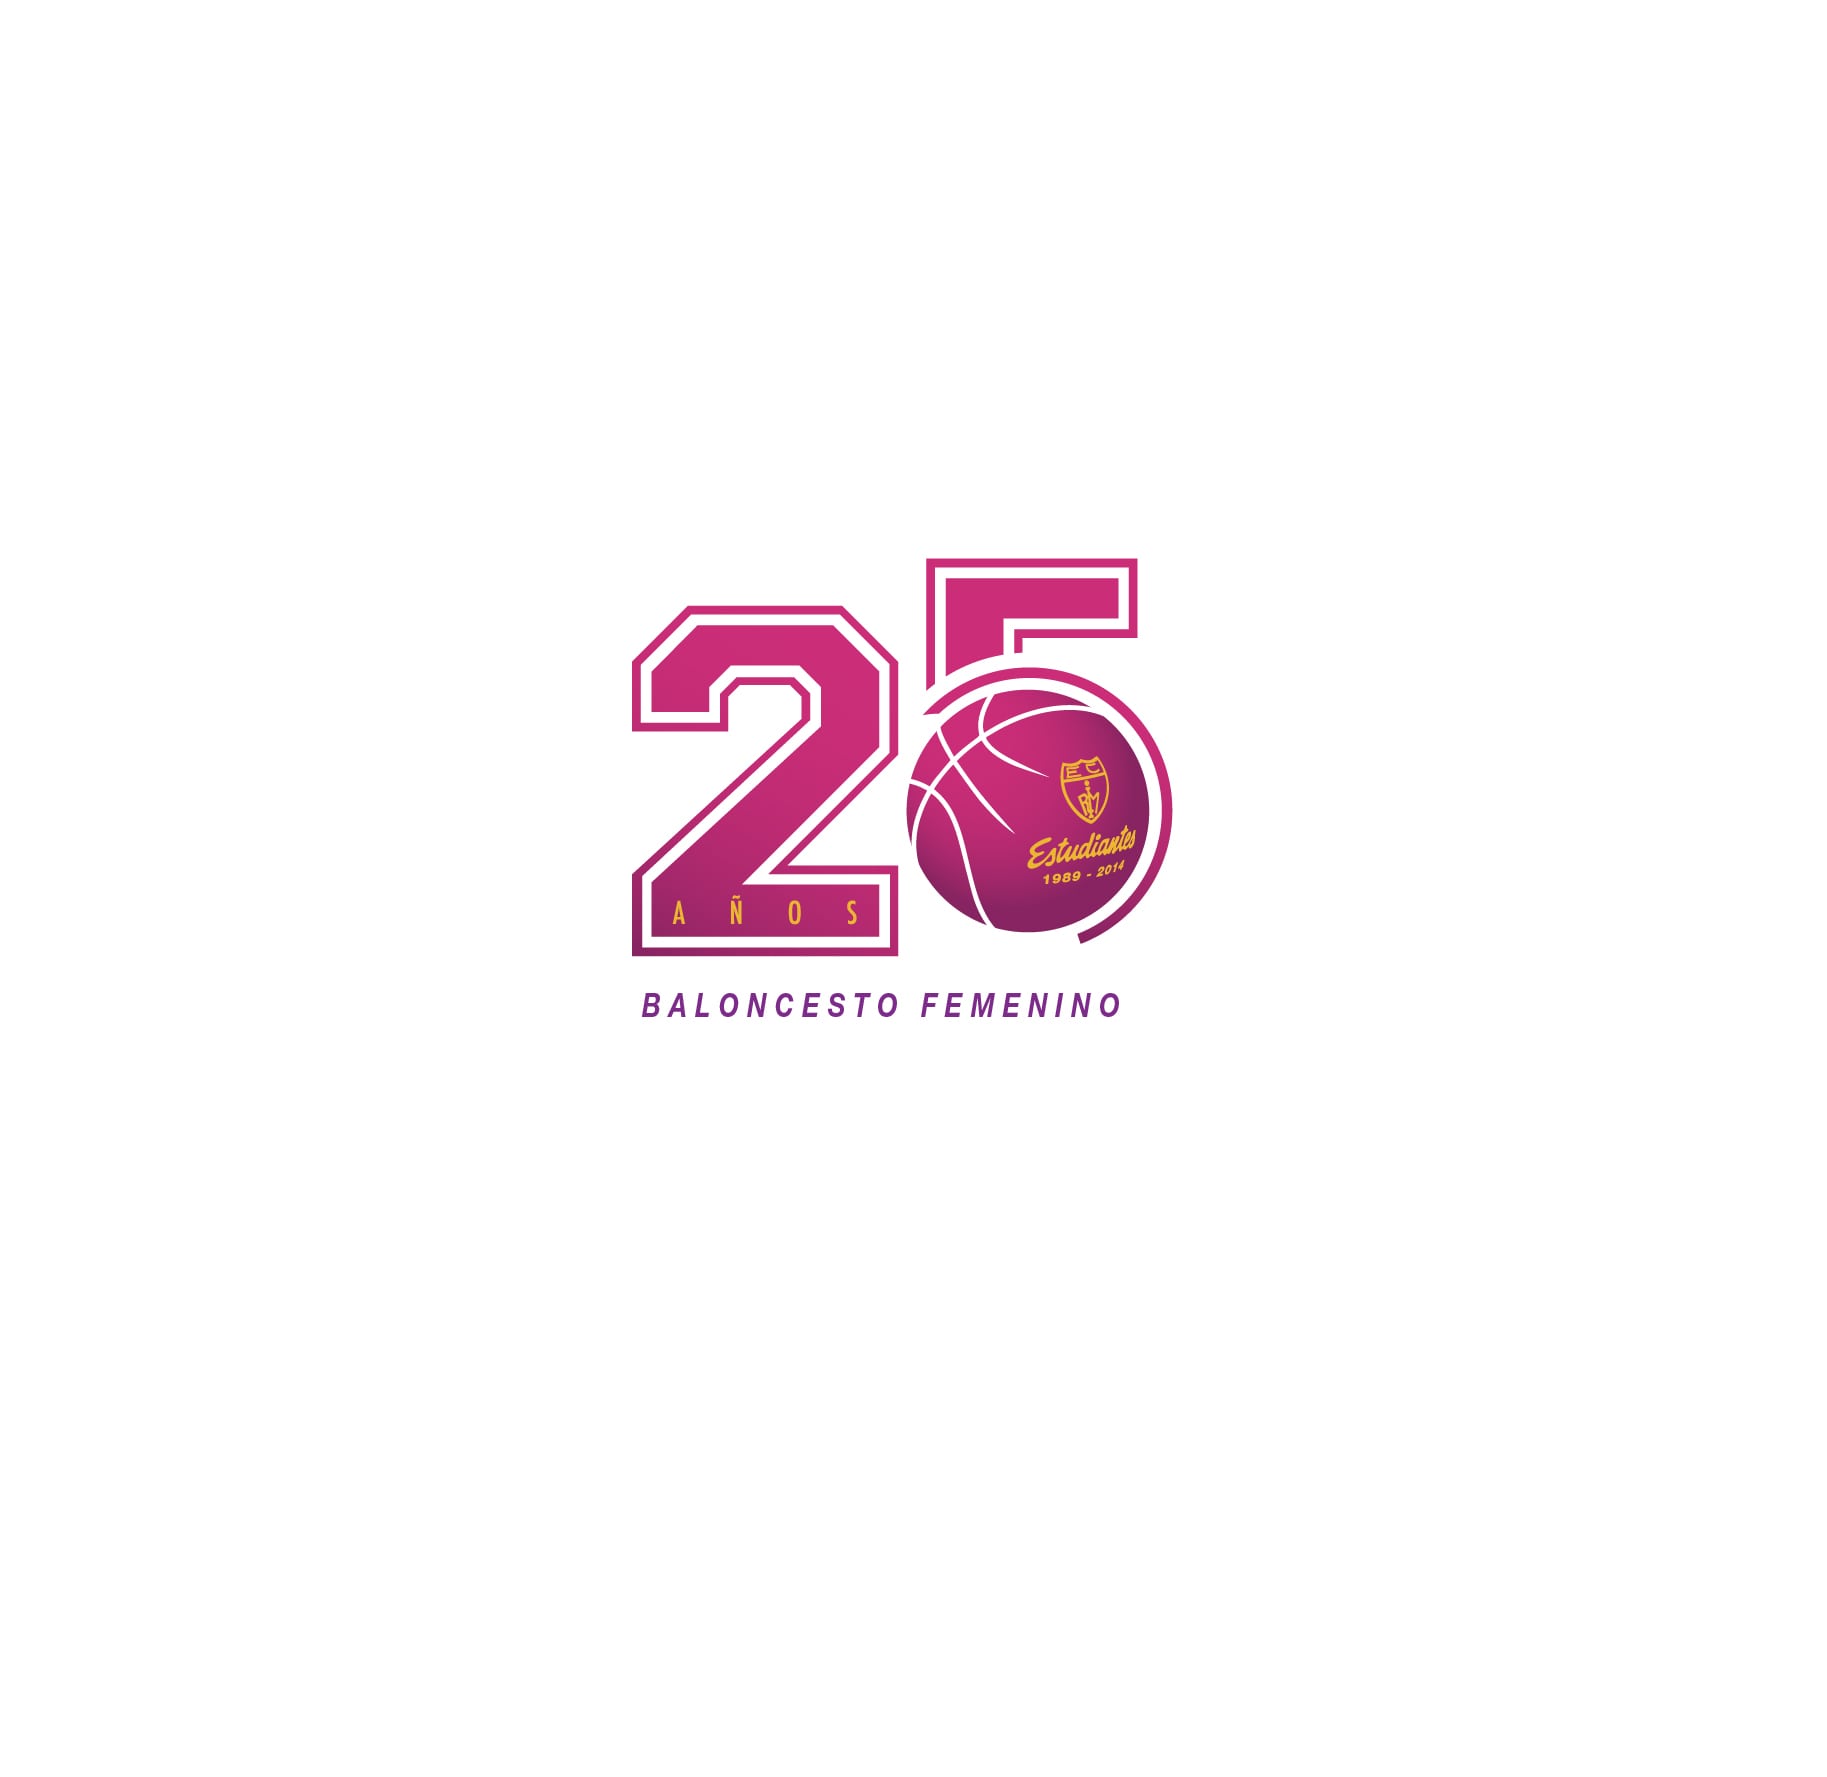 25º Aniversario de los equipos femeninos del Club Estudiantes.